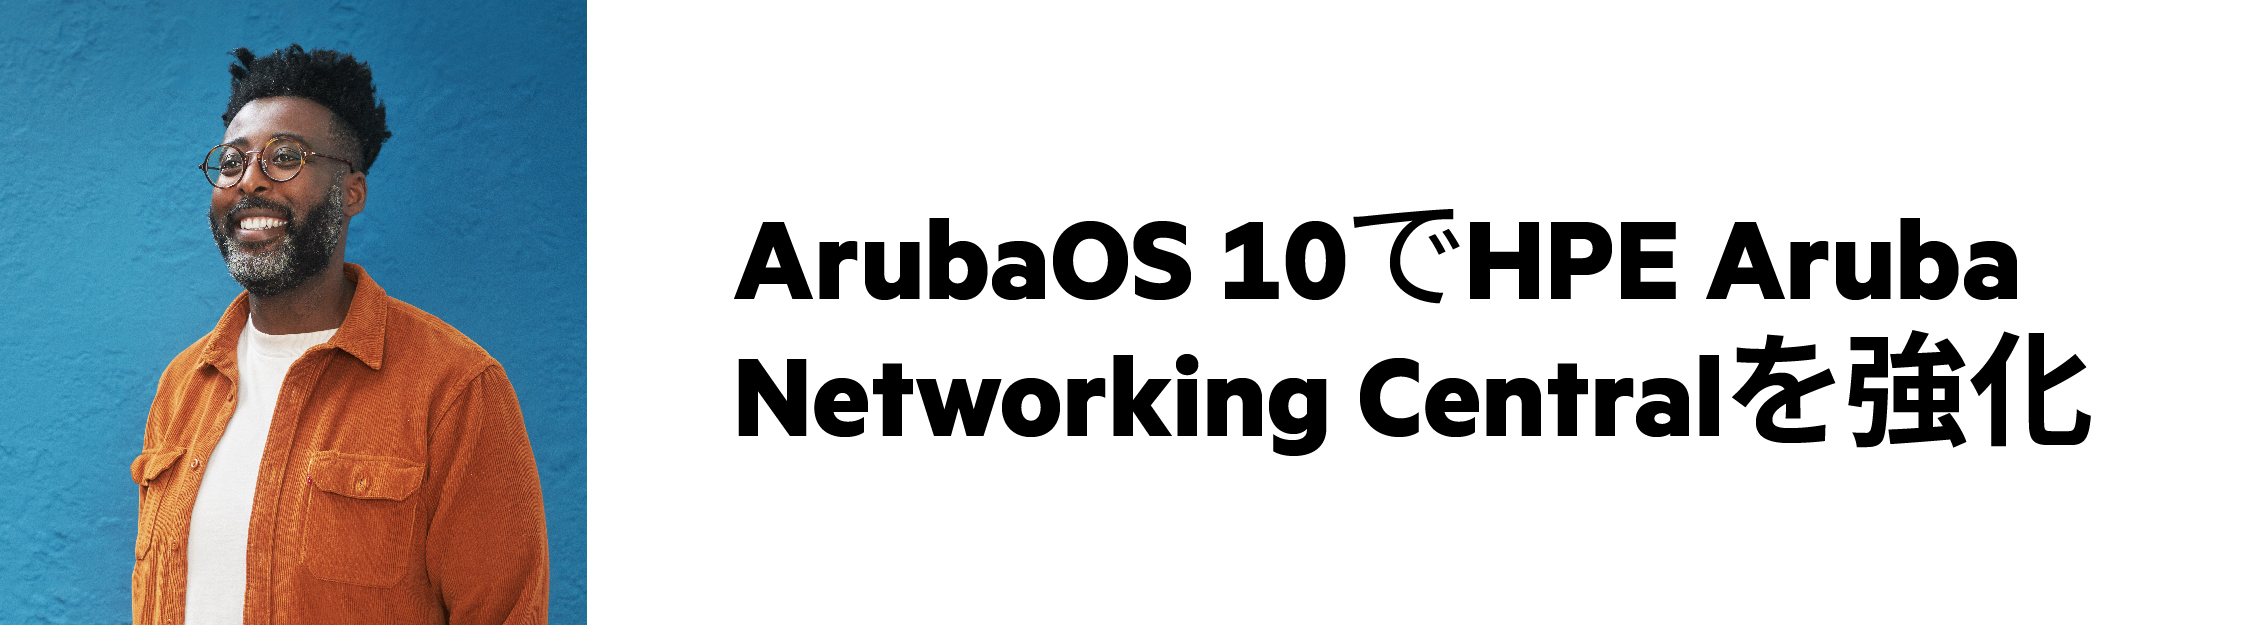 オンラインセミナー HPE Aruba Networking  CentralとArubaOS 10